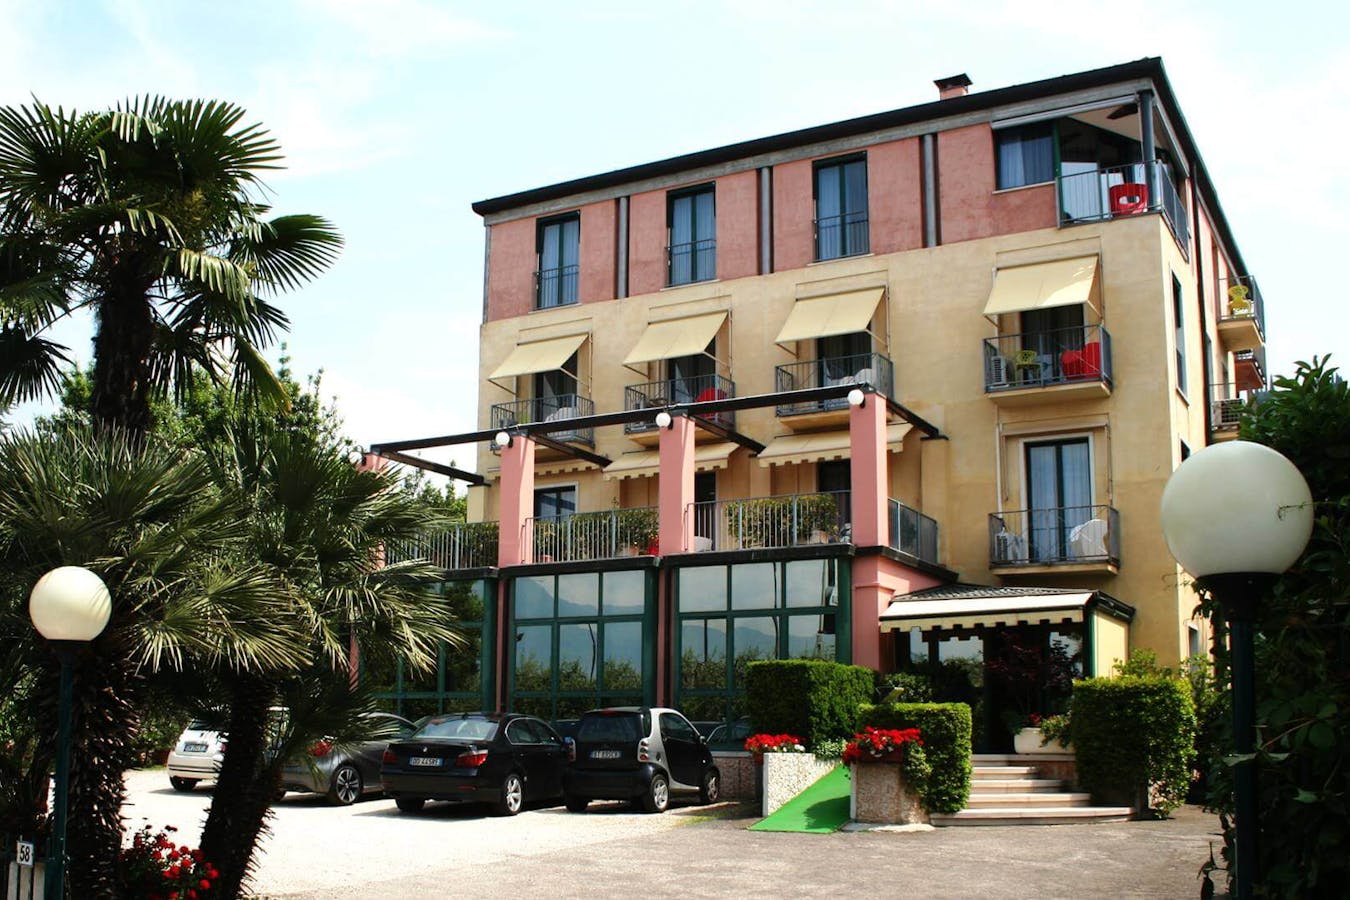 Hotel al Castello (Torri del Benaco) caso studio Smartpricing - testimonianza Alfredo